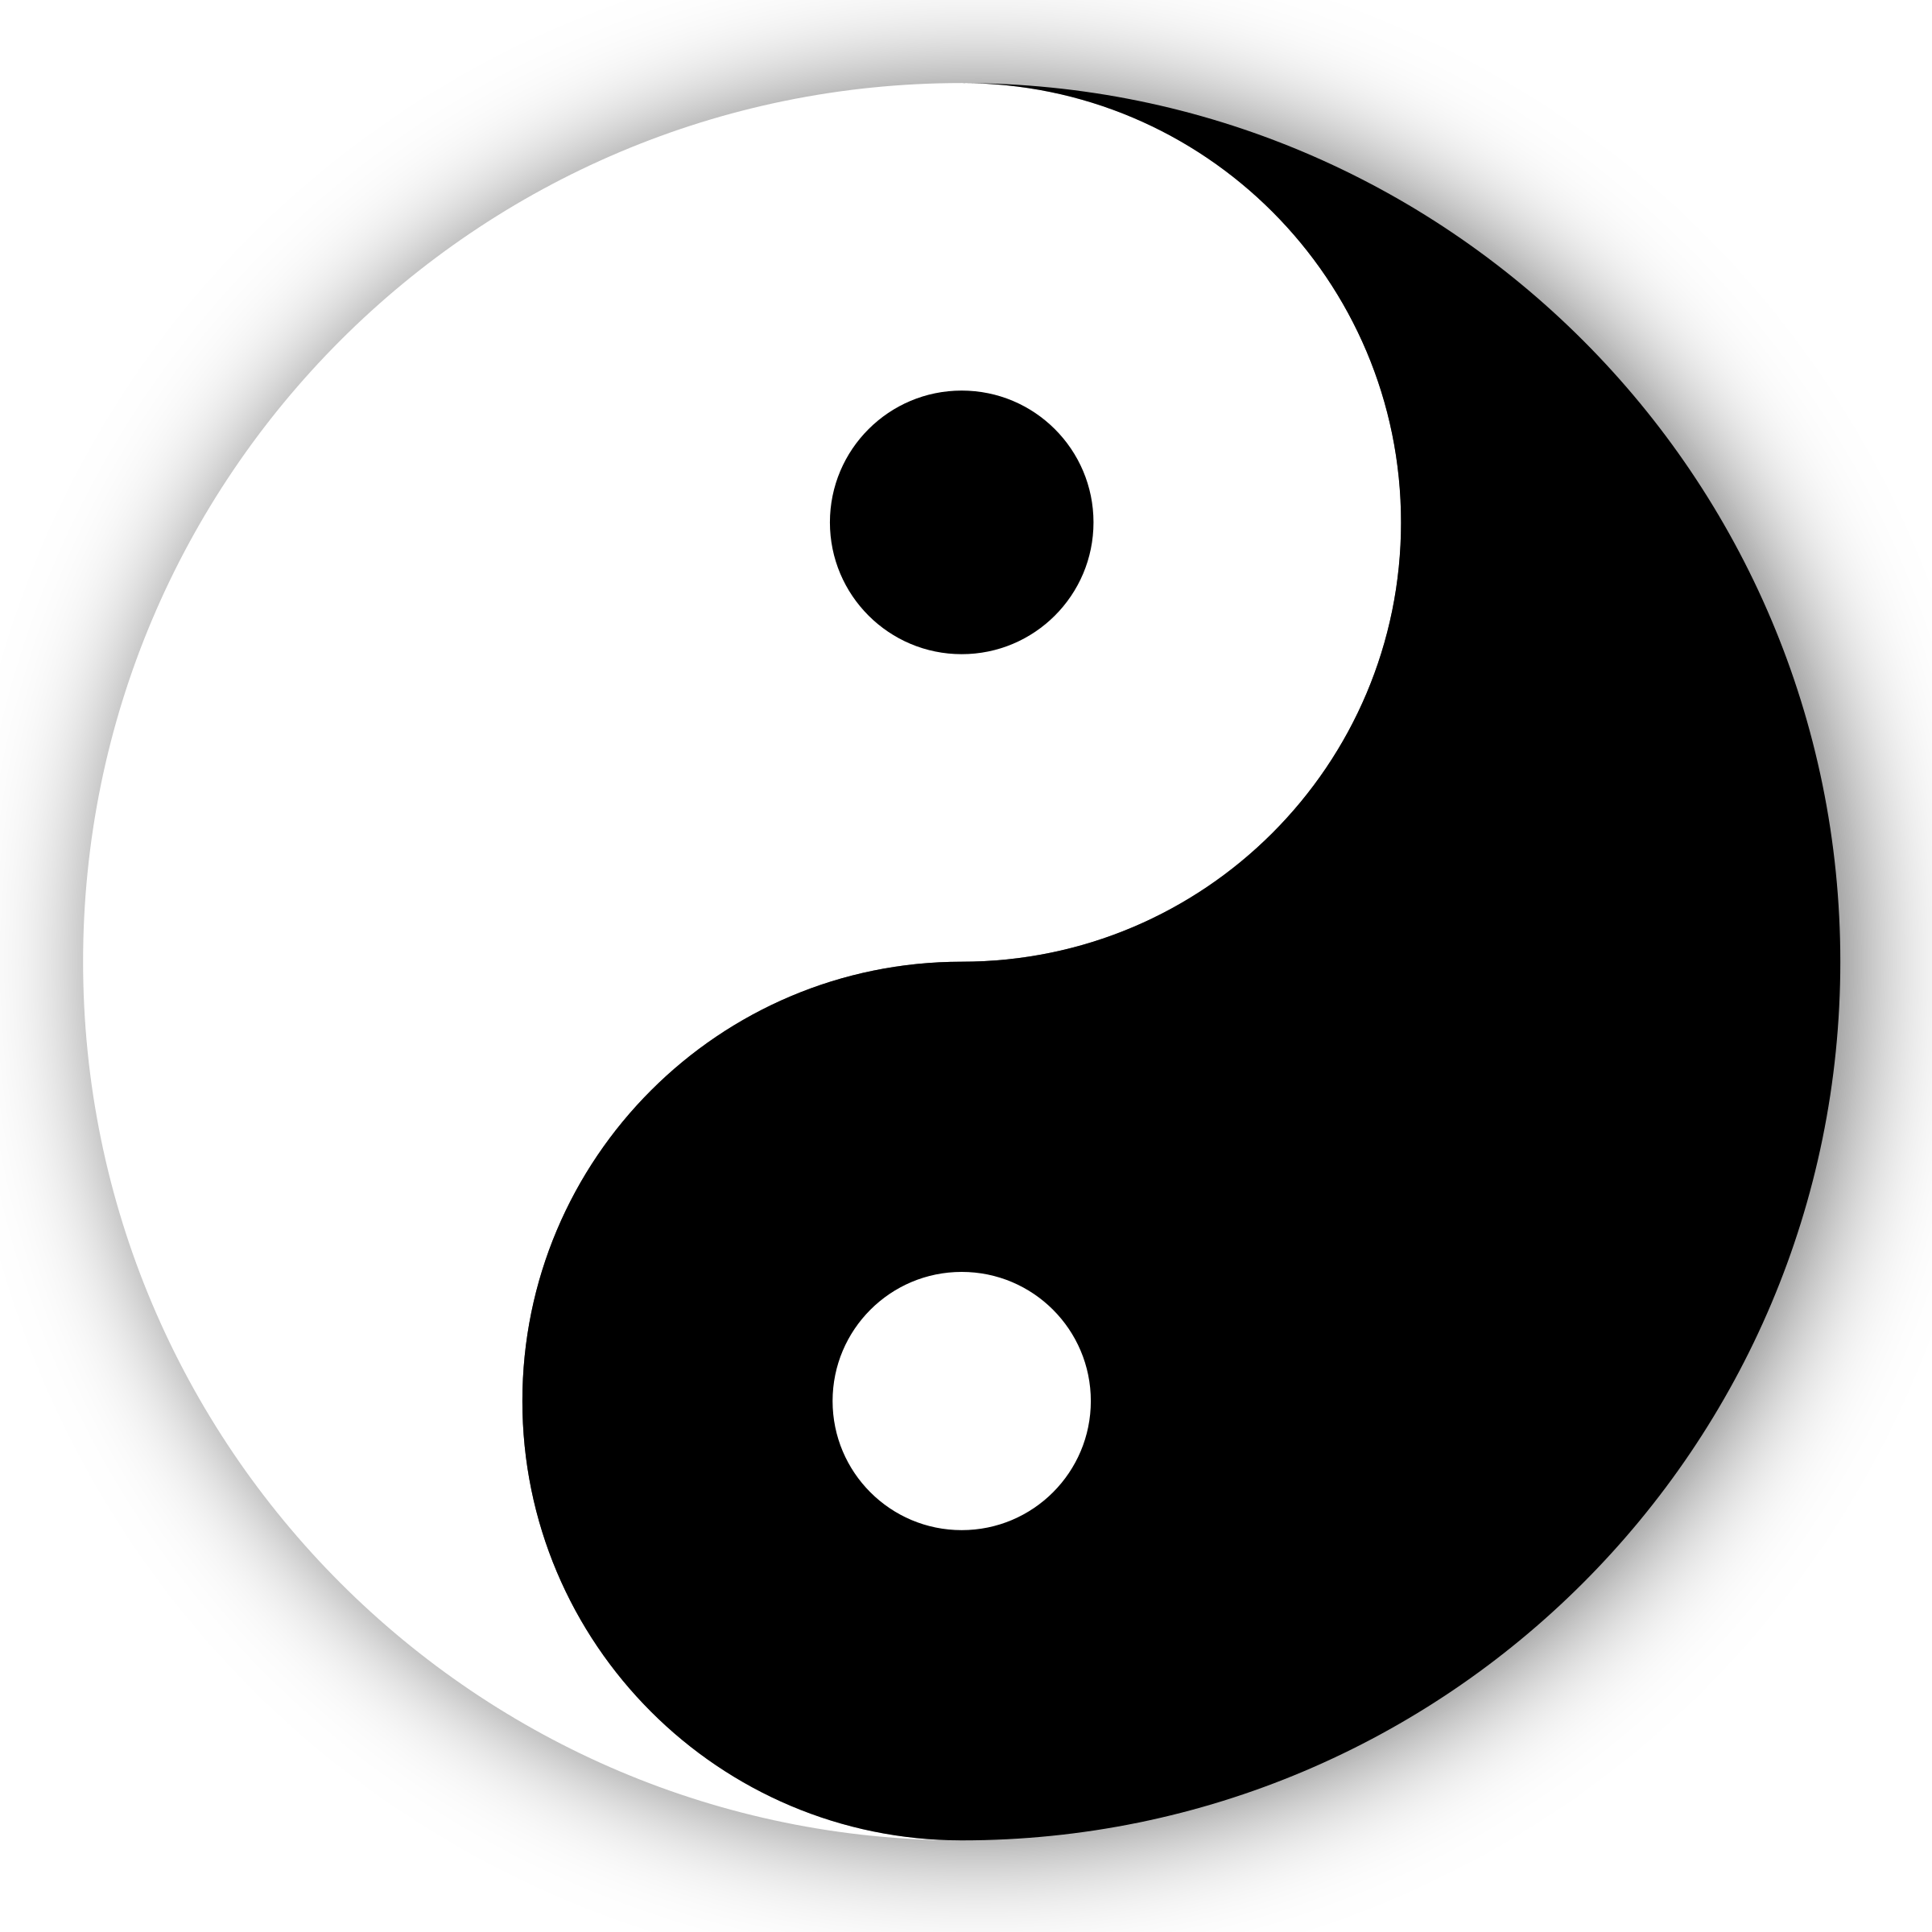 Big Image - Yin And Yang (2400x2400)